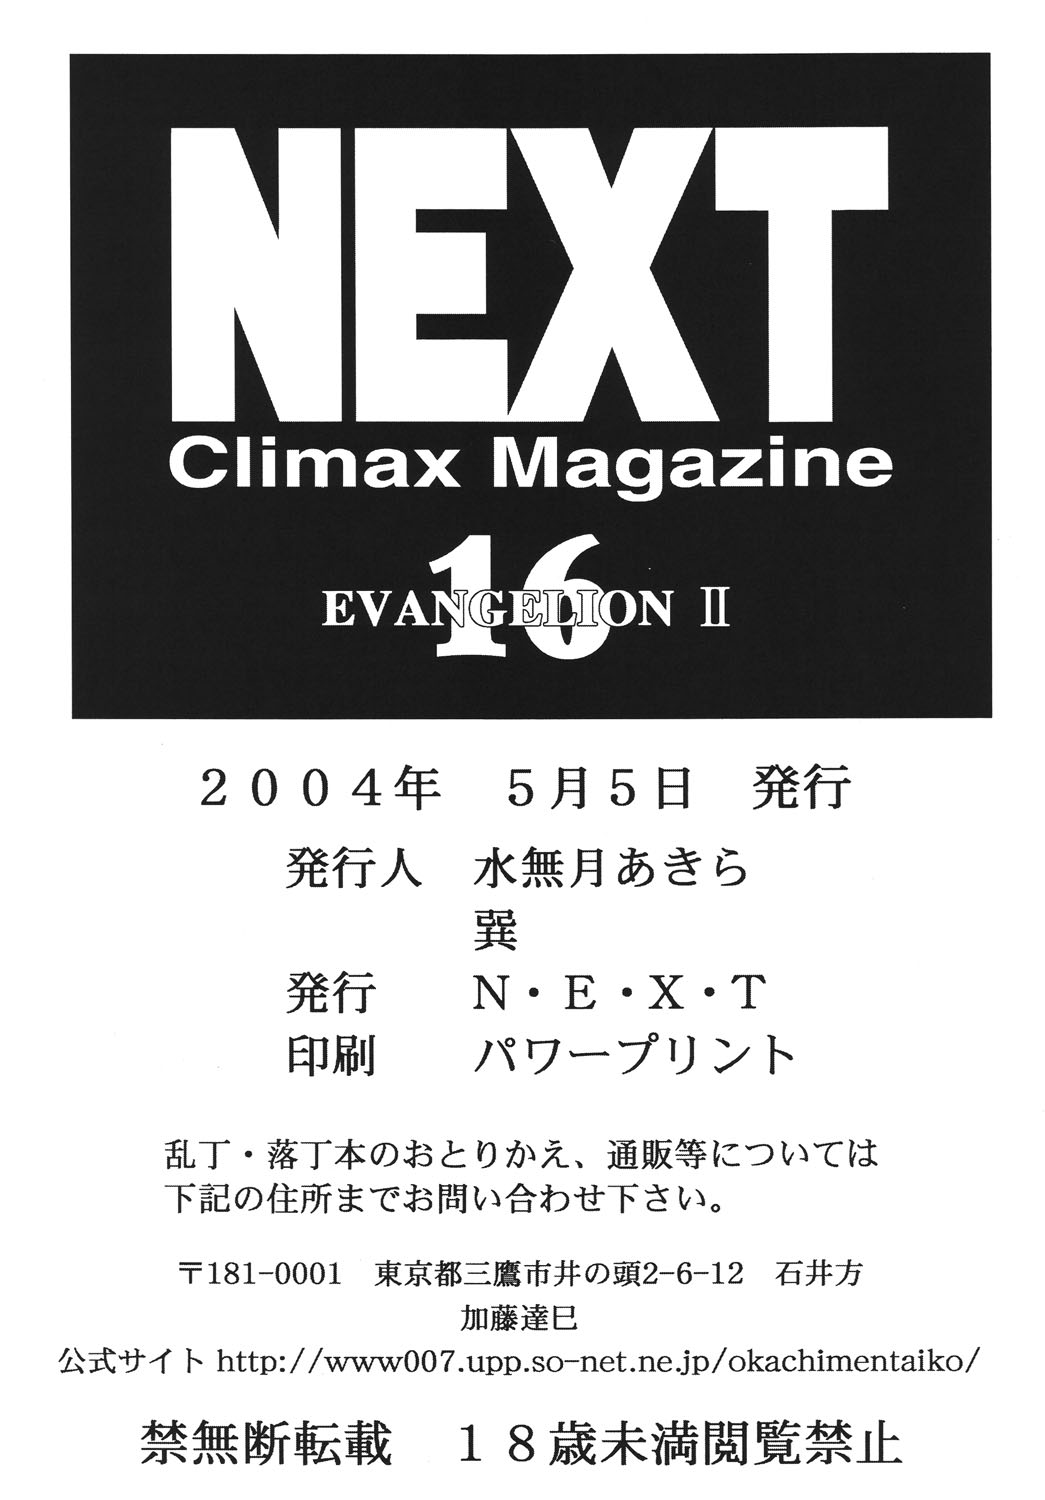 [Rippadou] NEXT Climax Magazine 16 (Neon Genesis Evangelion) [立派堂] NEXT Climax Magazine 16 (新世紀エヴァンゲリオン)